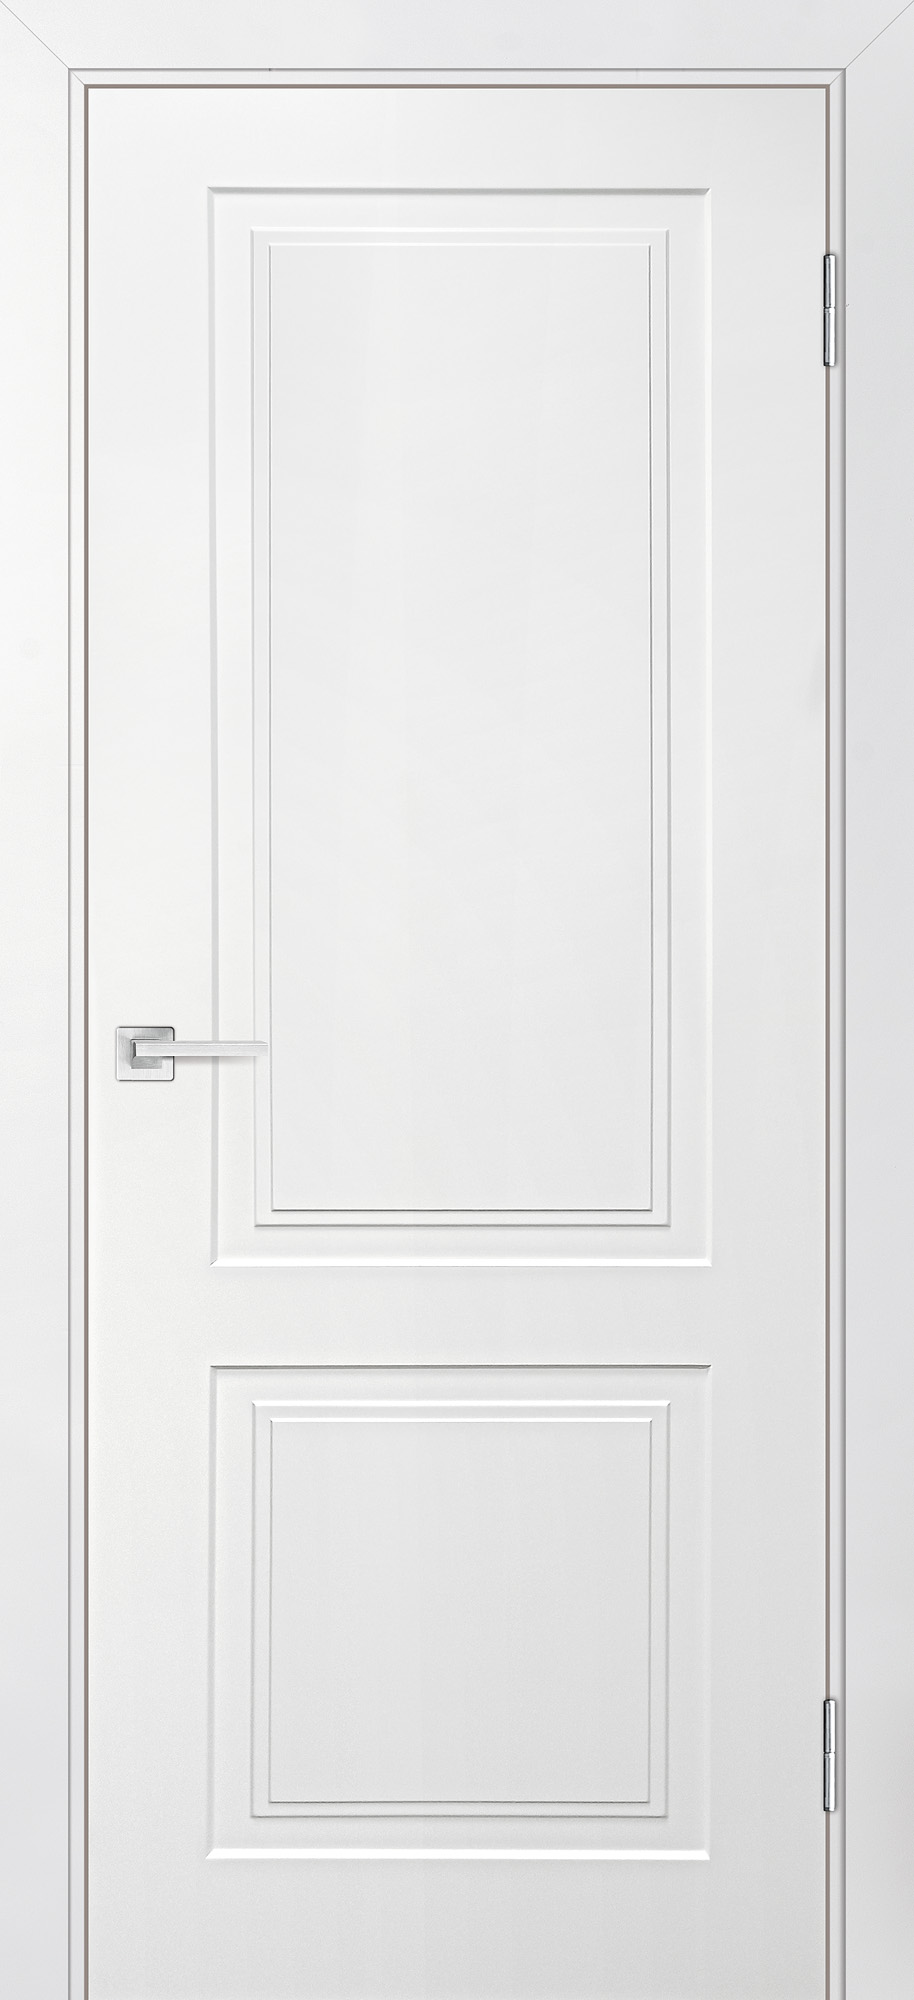 Двери крашеные (Эмаль) ТЕКОНА Смальта-Лайн 04 глухое Белый ral 9003 размер 200 х 60 см. артикул F0000083711